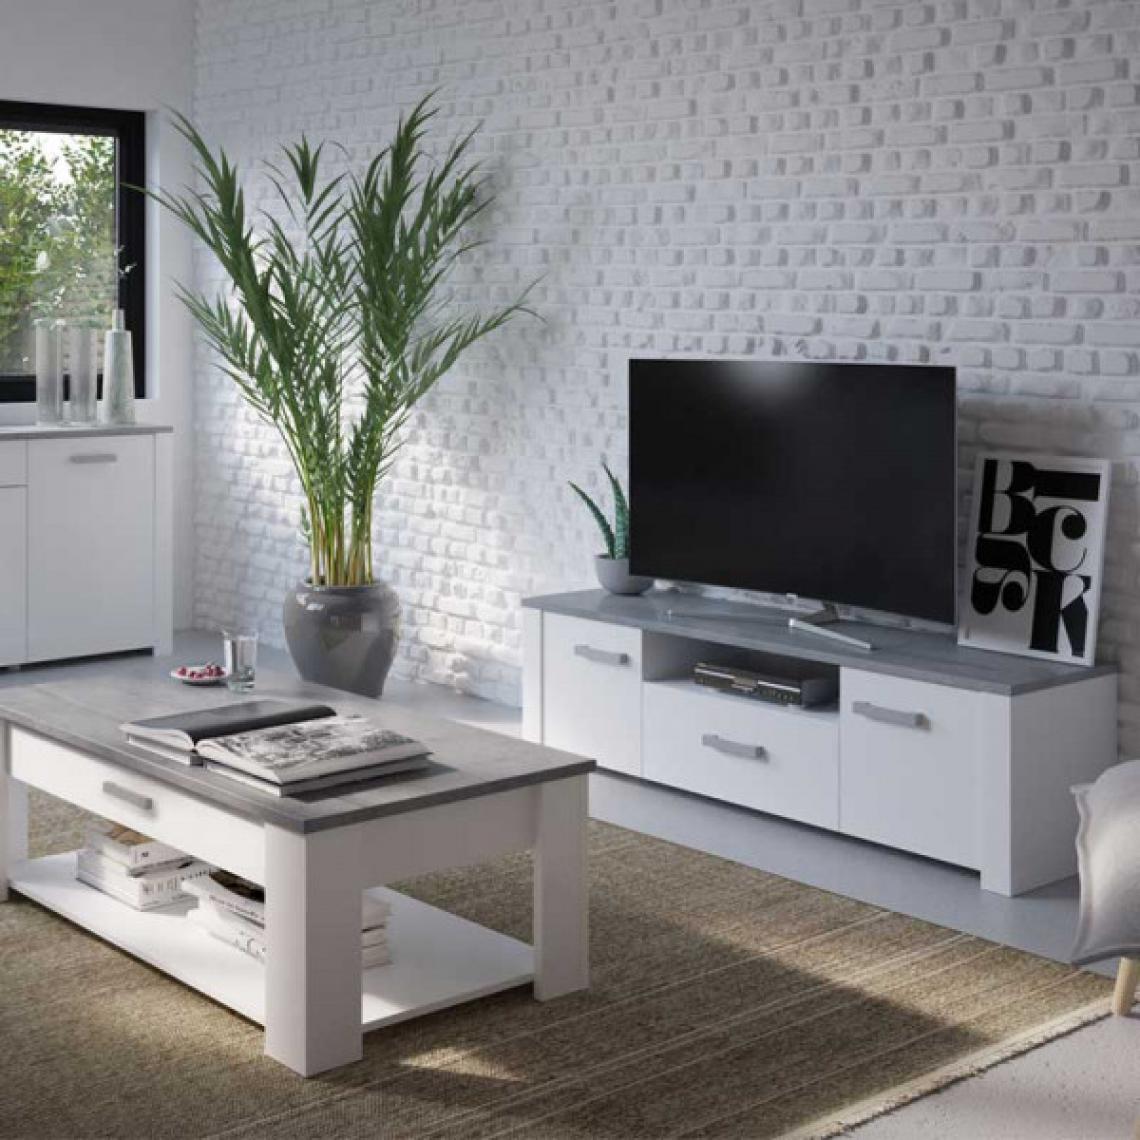 Dansmamaison - Meuble TV 2 portes Blanc/Béton clair - TOURS - L 148 x l 42 x H 44 cm - Meubles TV, Hi-Fi